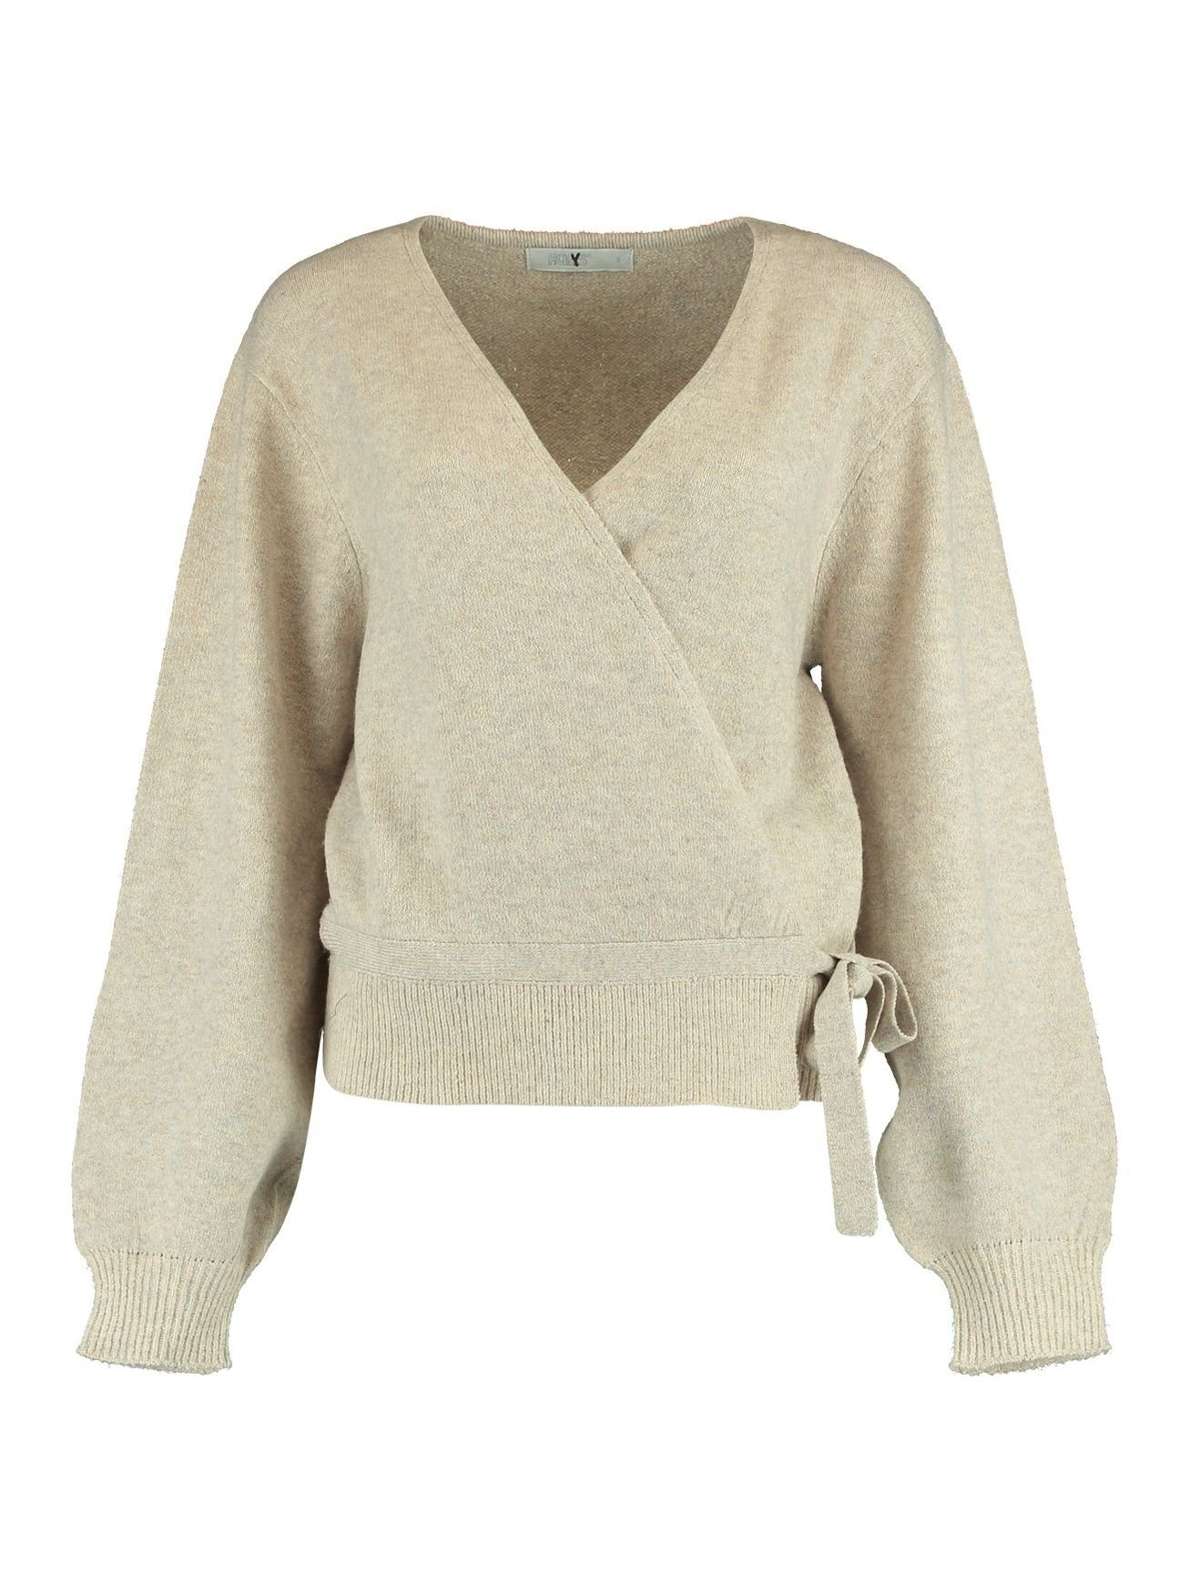 Вязаный свитер с запахом вязаный свитер-туника свитер с длинными рукавами RONJA 4707 бежевого цвета